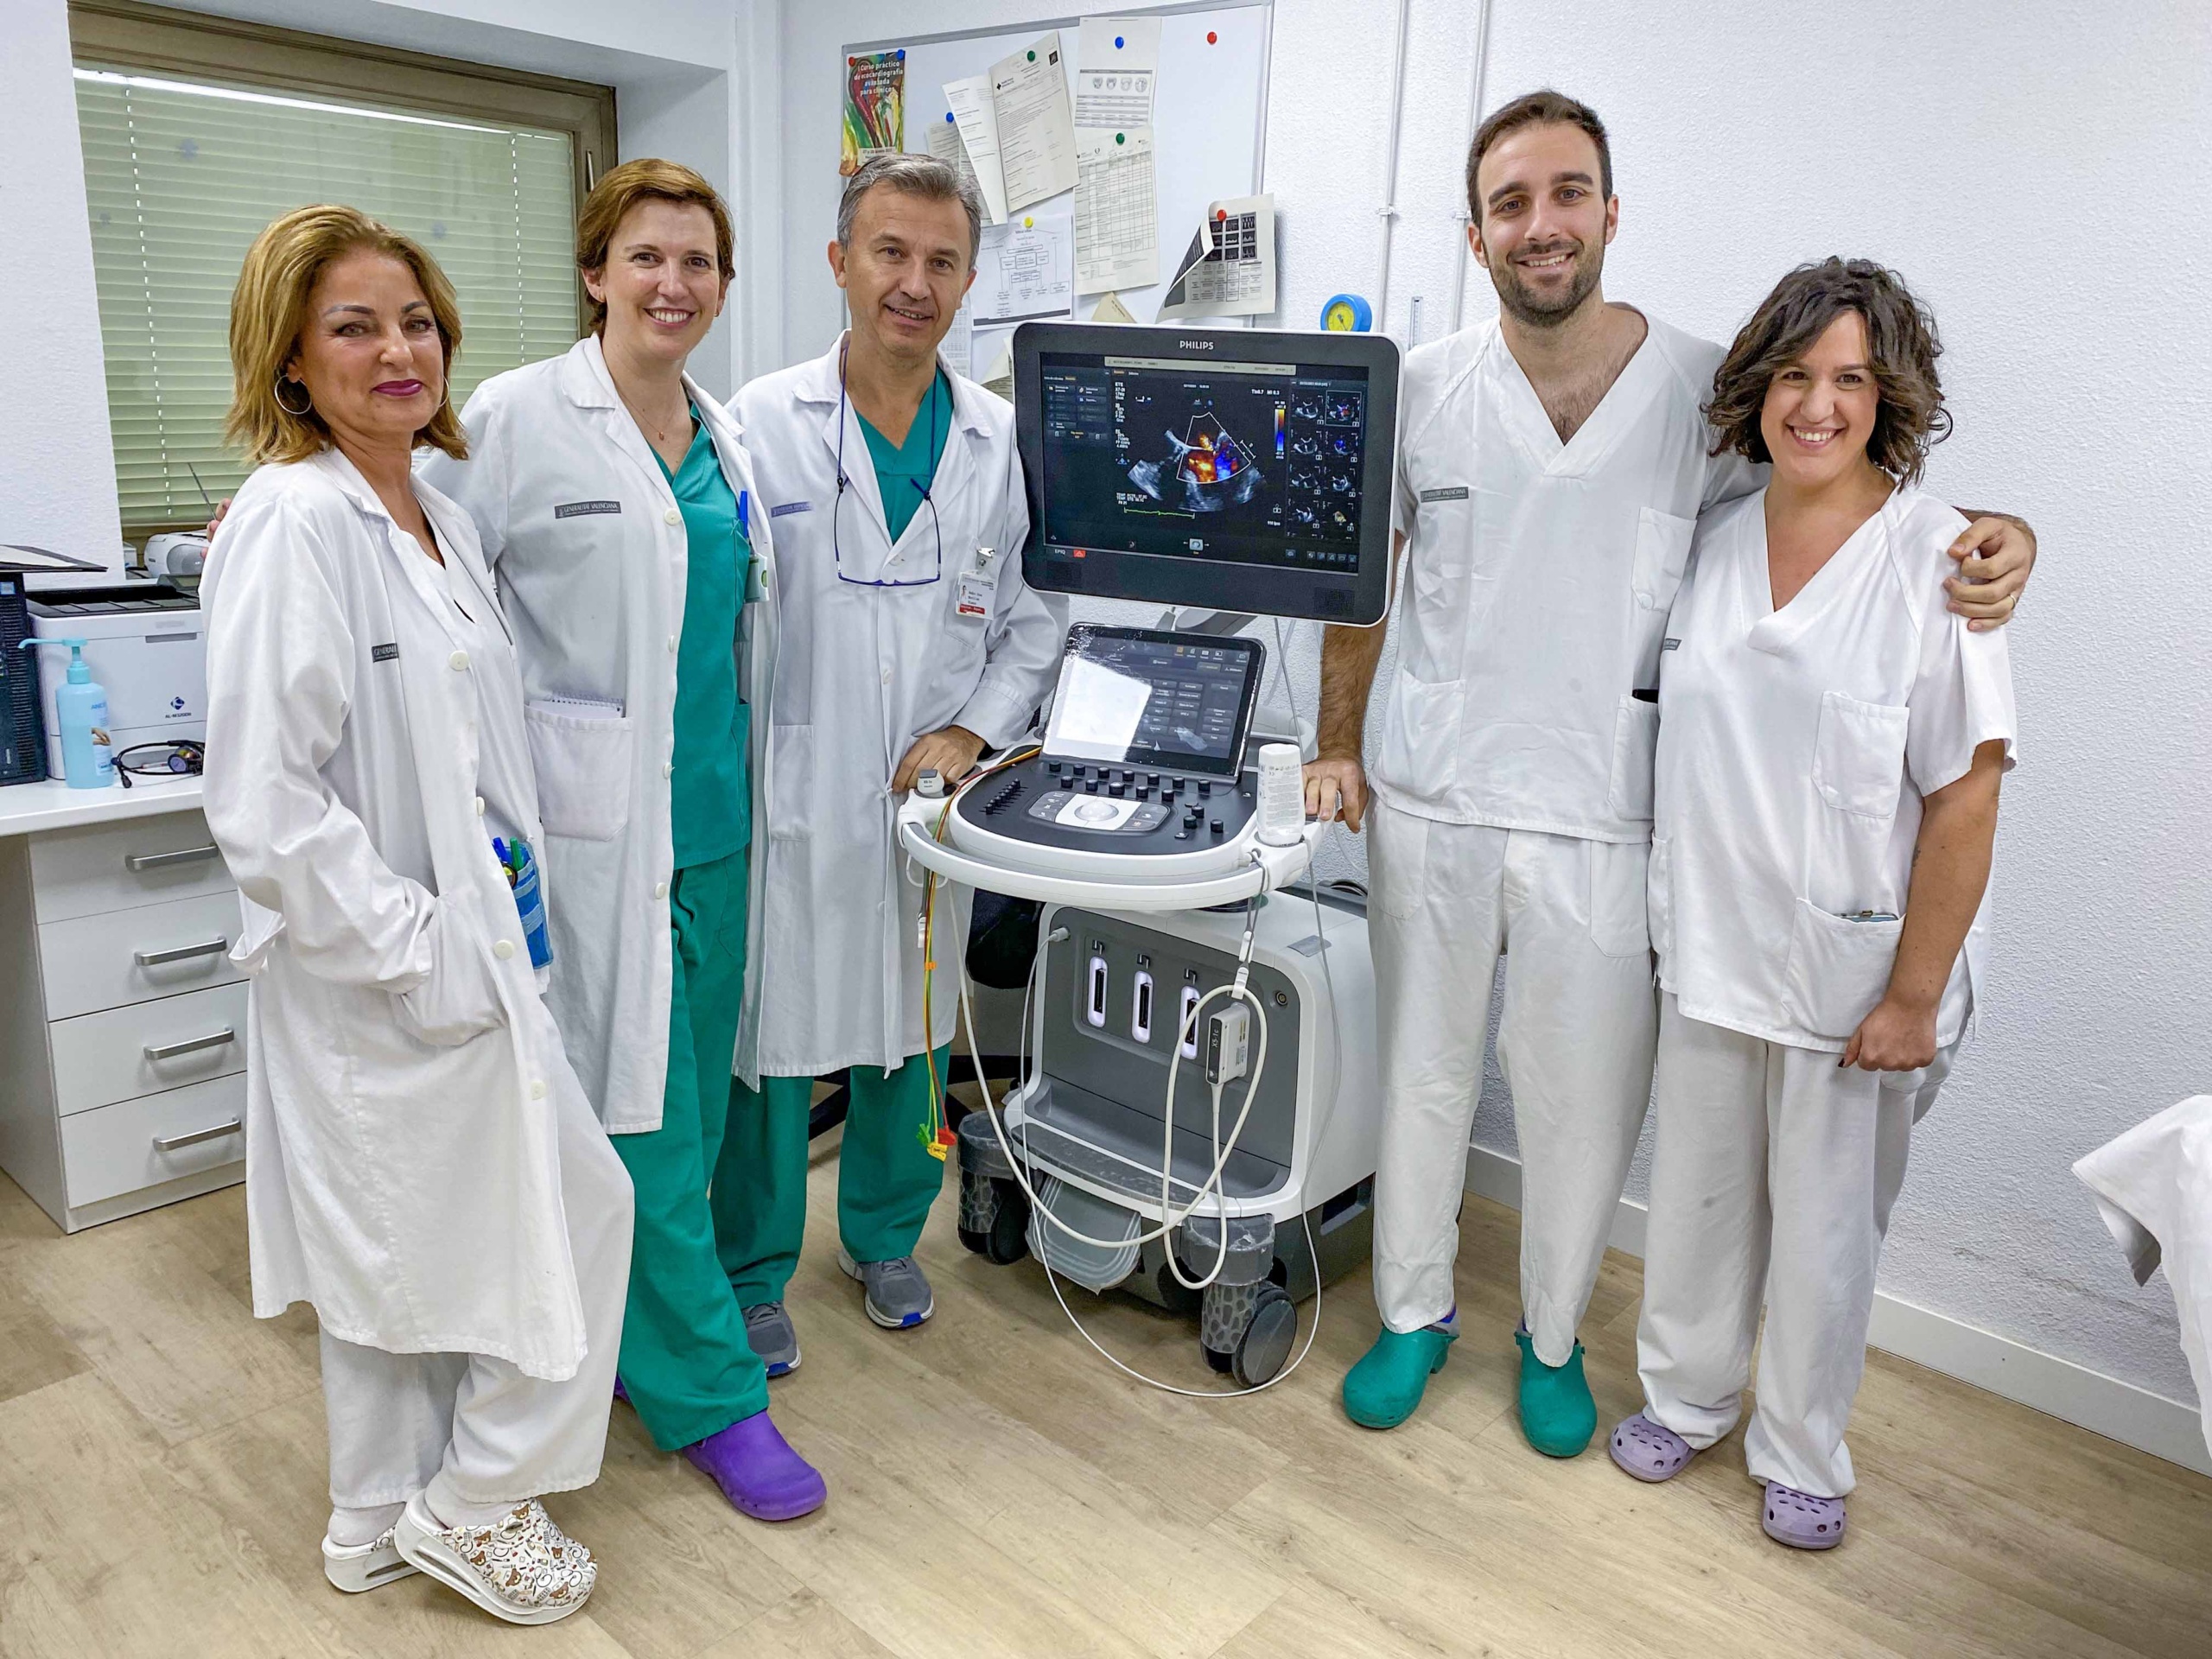 Reconocimiento europeo para la Unidad de Imagen Cardiaca del Hospital General de Elche